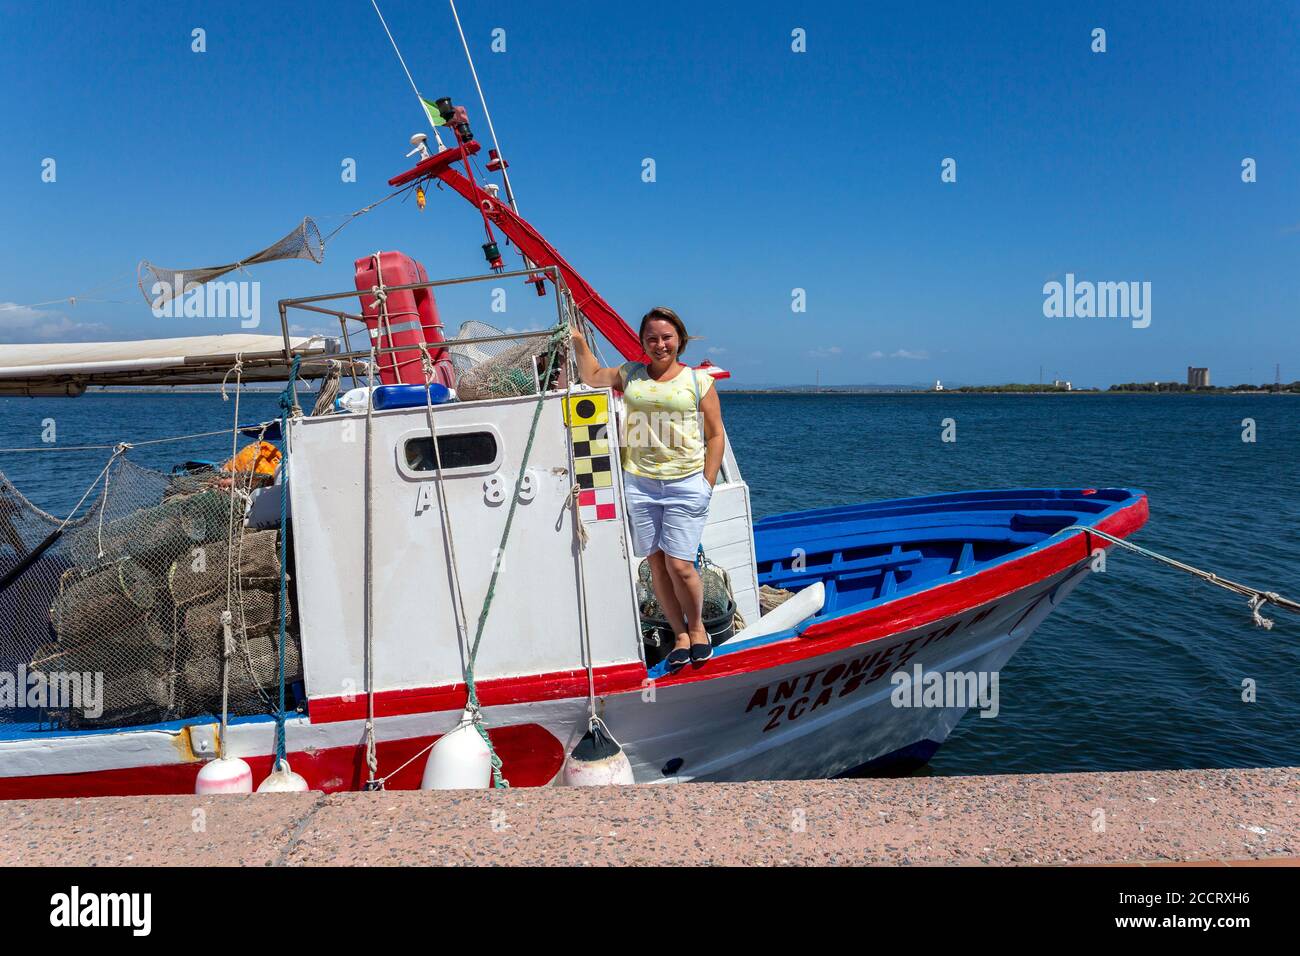 Sant'Antioco, Italy - 07 18 2020: Fishing boats in the port of Sant'Antioco, Sardinia Stock Photo